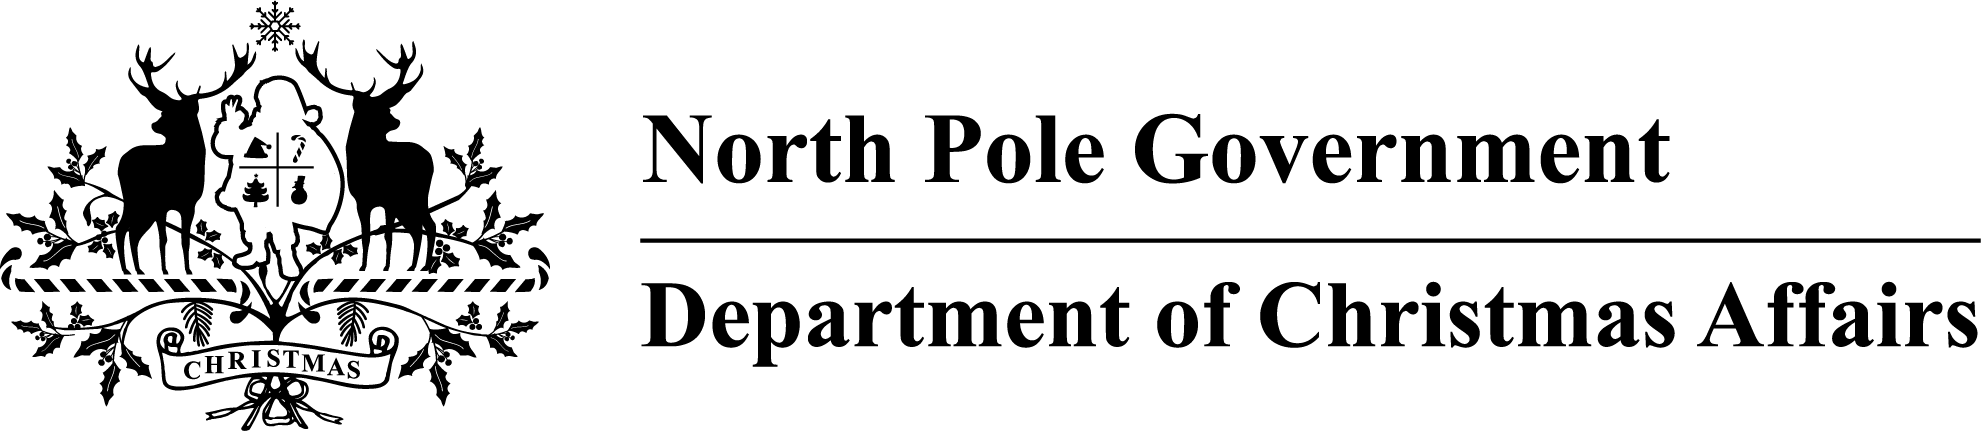 DCA black logo